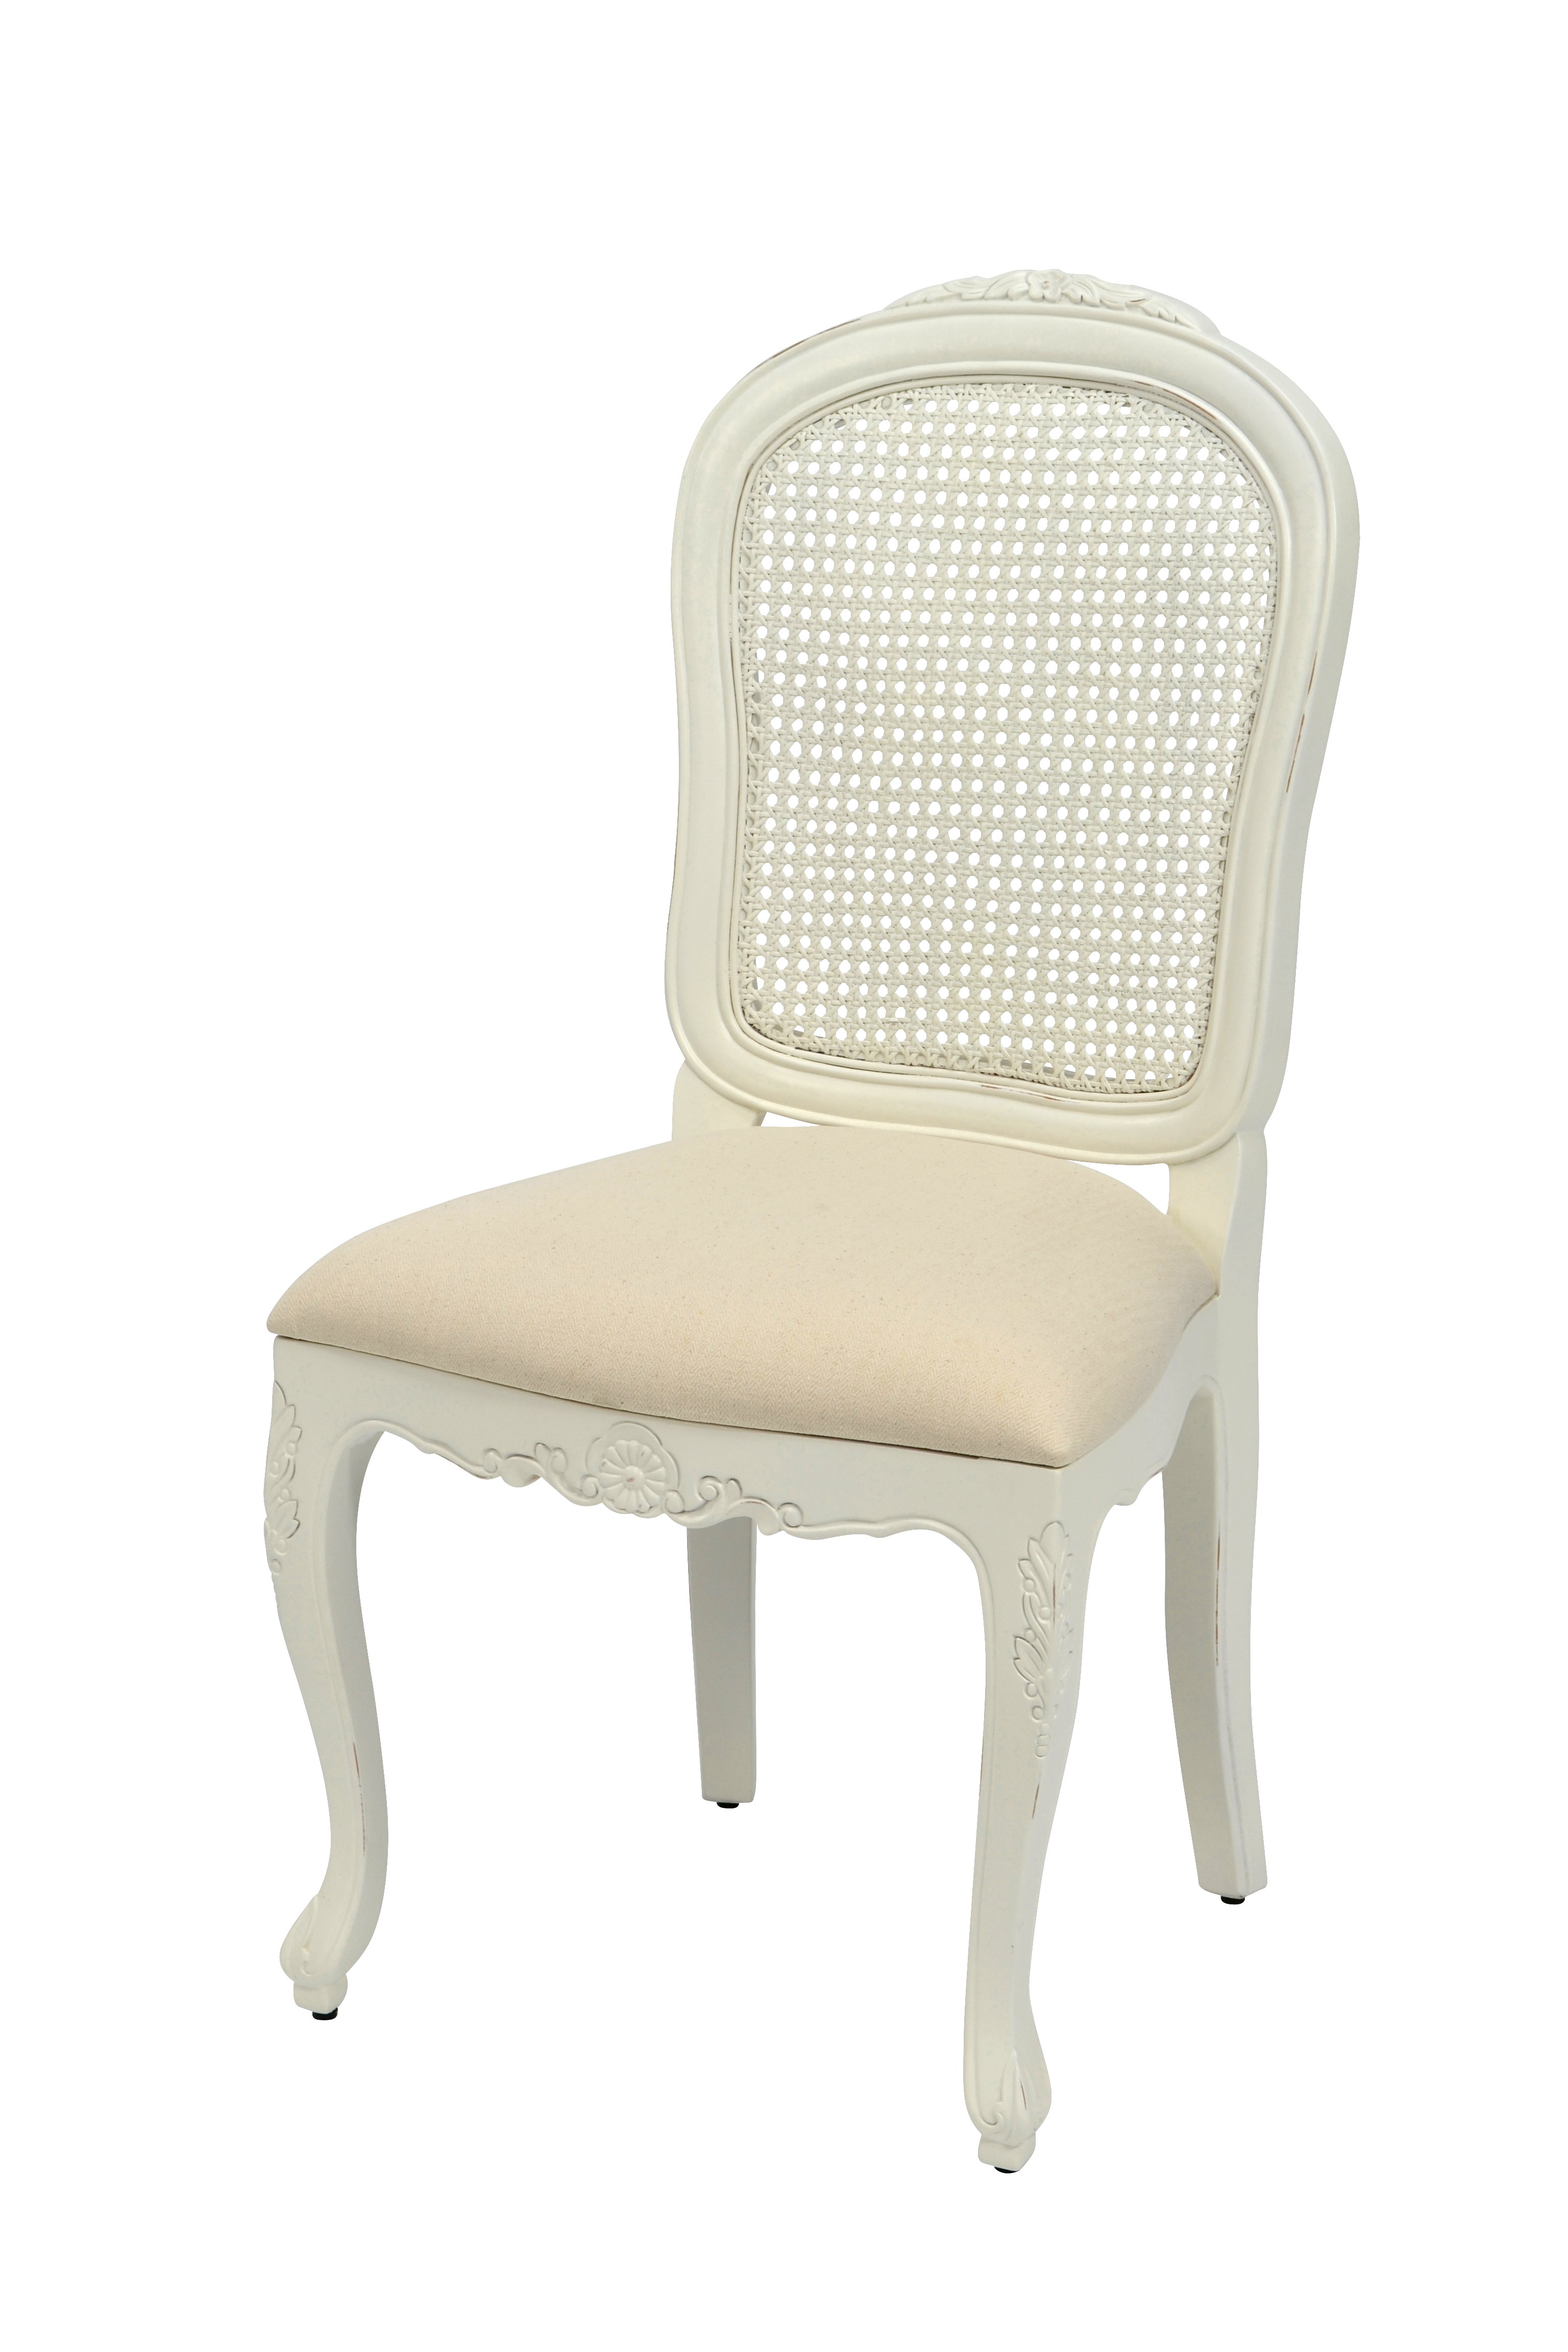 Levně Estila Provence masivní bílá jídelní židle Preciosa s látkovou sedací částí a opěradlem z ratanu s mahagonovým tělem 99cm